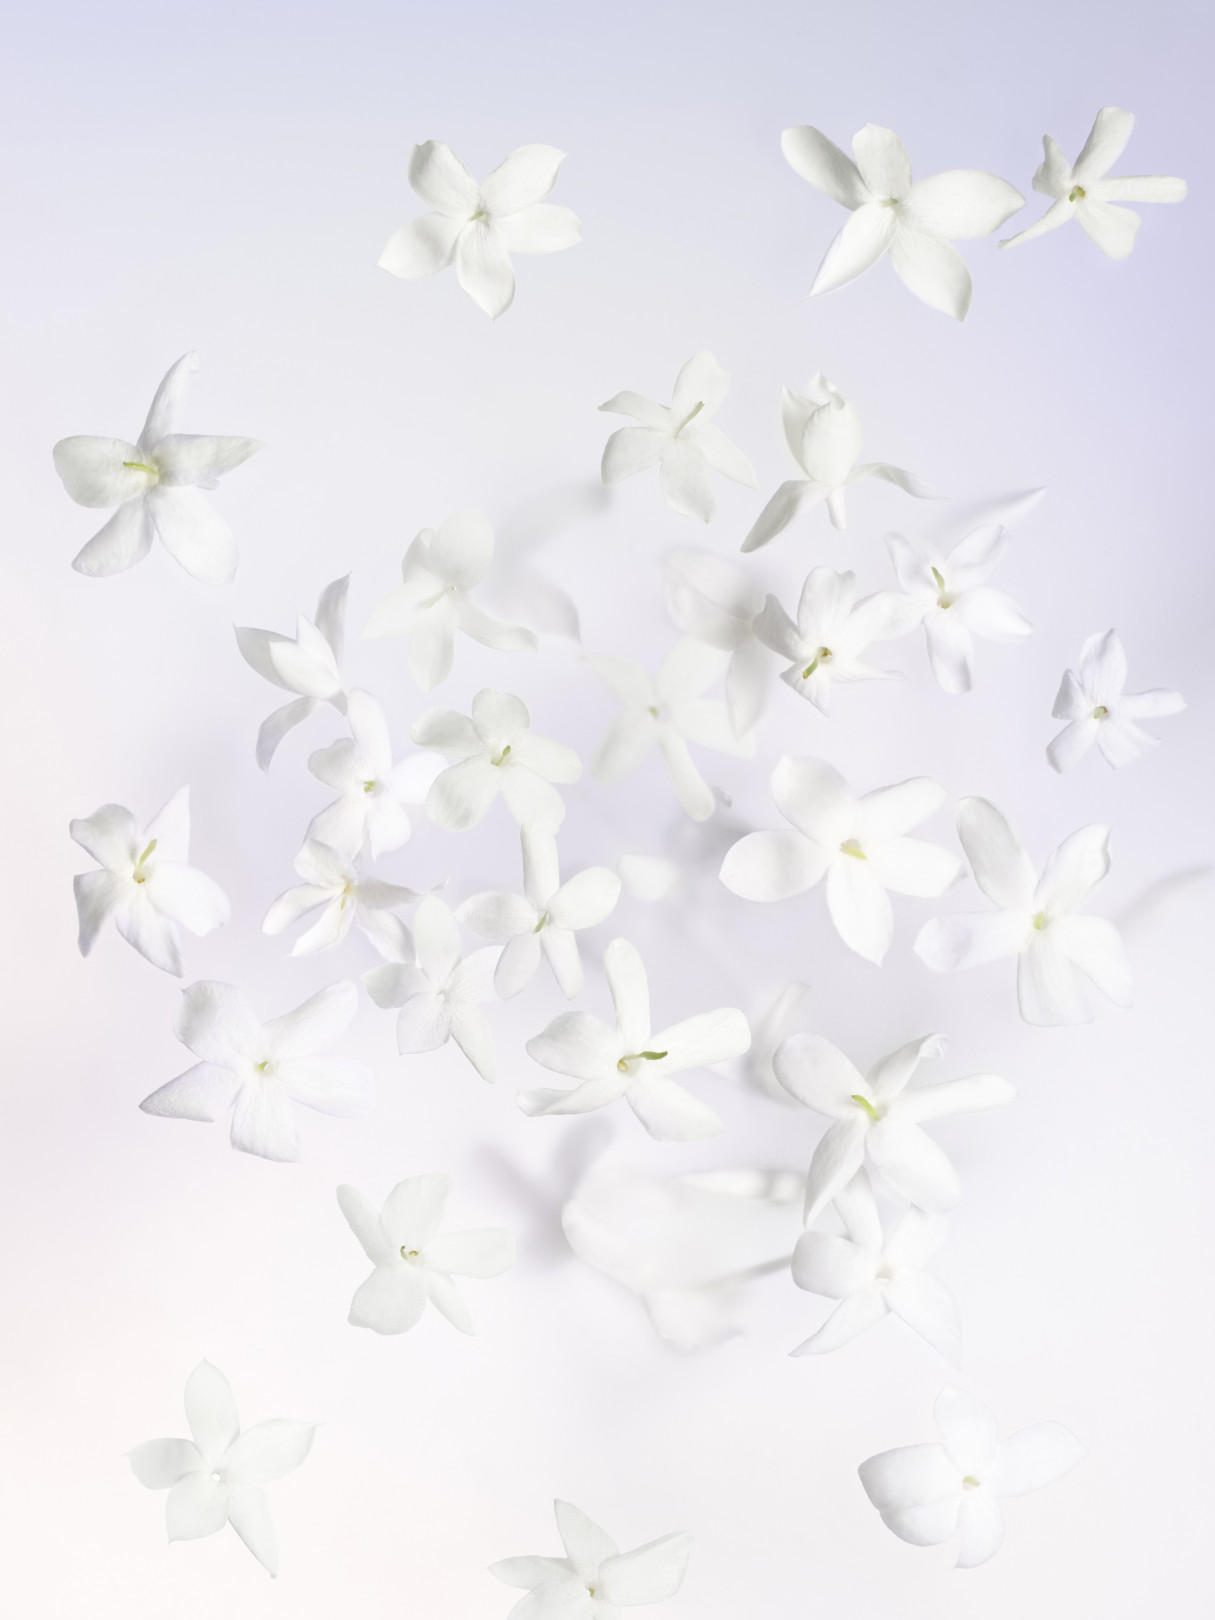 ルイ・ヴィトンの新作フレグランス「ウール・ダプサンス」発売、ブーケのような花々の香り | PHOTO(14/14) | FASHION